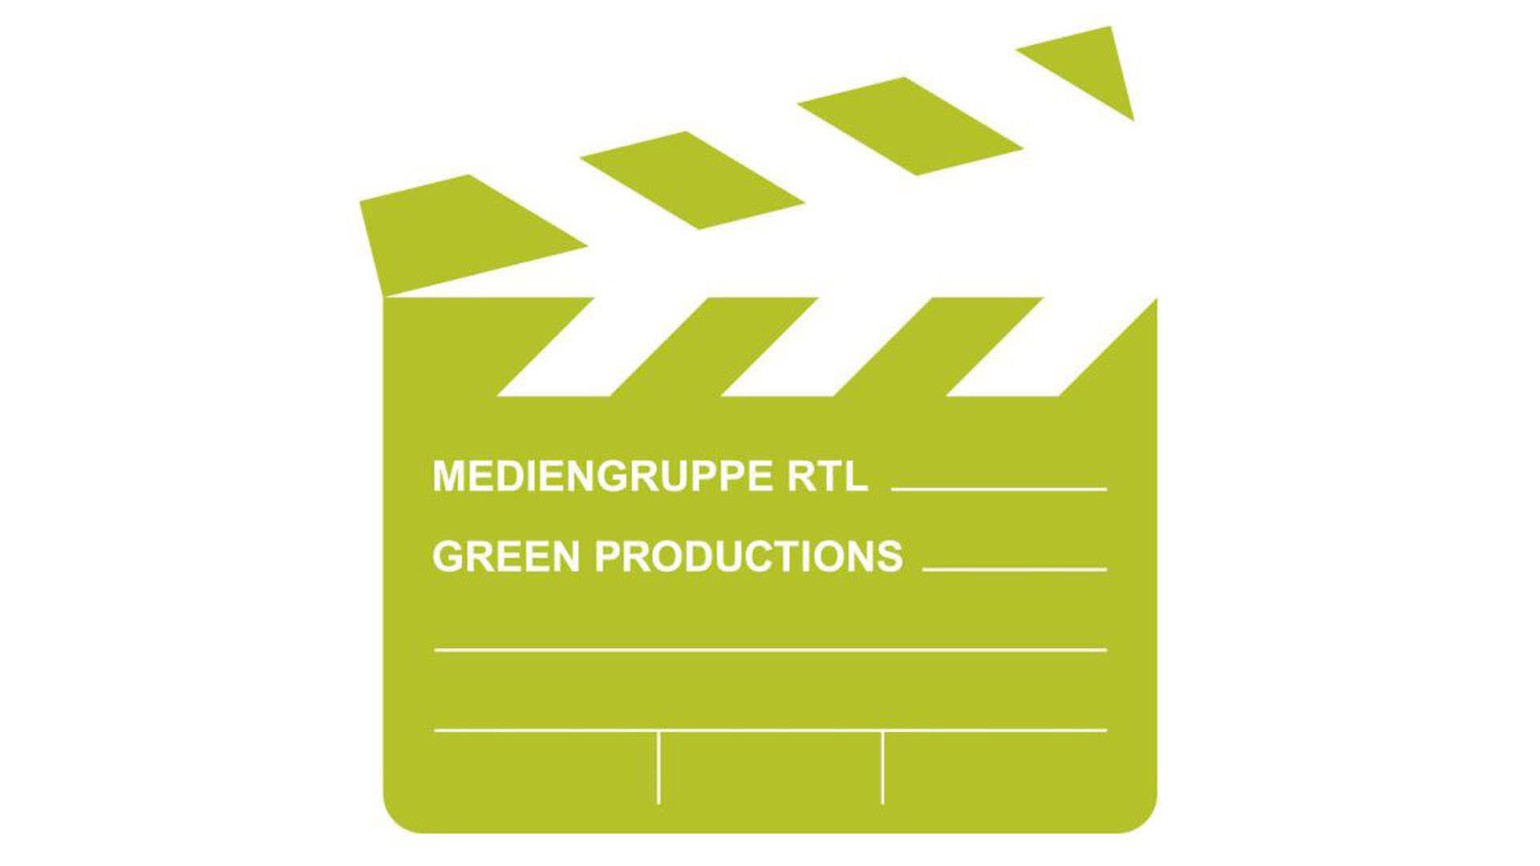 Mediengruppe RTL setzt Mindeststandards für klimafreundliche Produktionen